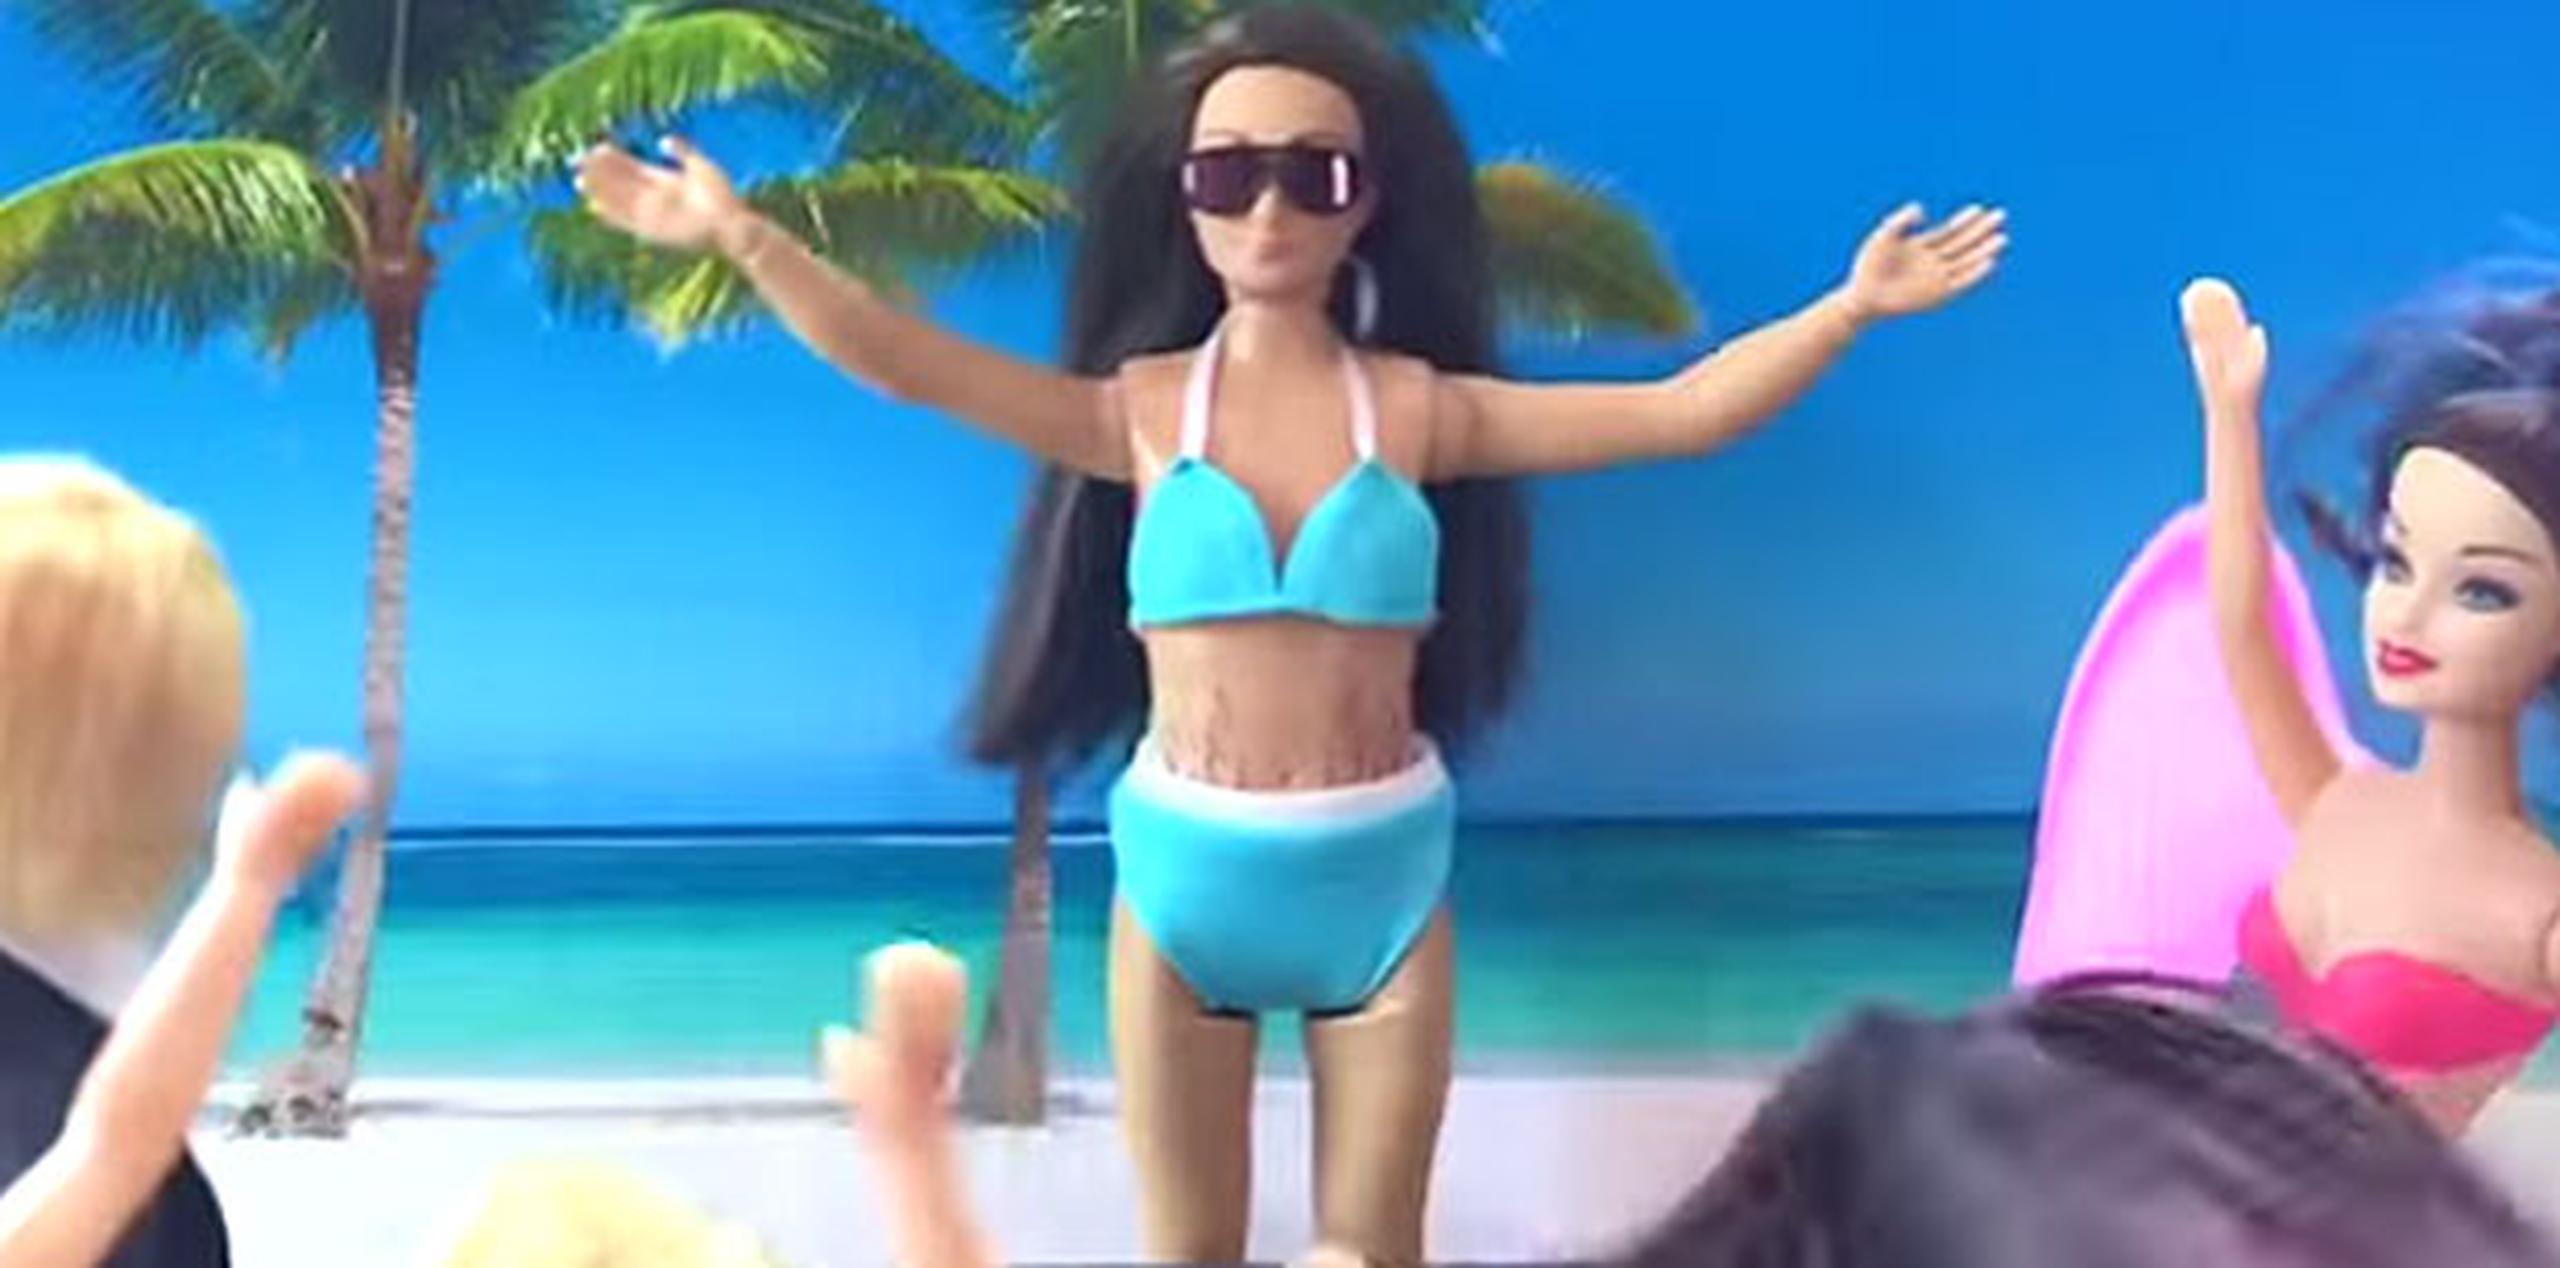 En el nuevo comercial, la muñeca muestra inseguridad al ver imágenes de la mujer "perfecta" en bikini. (Youtube)